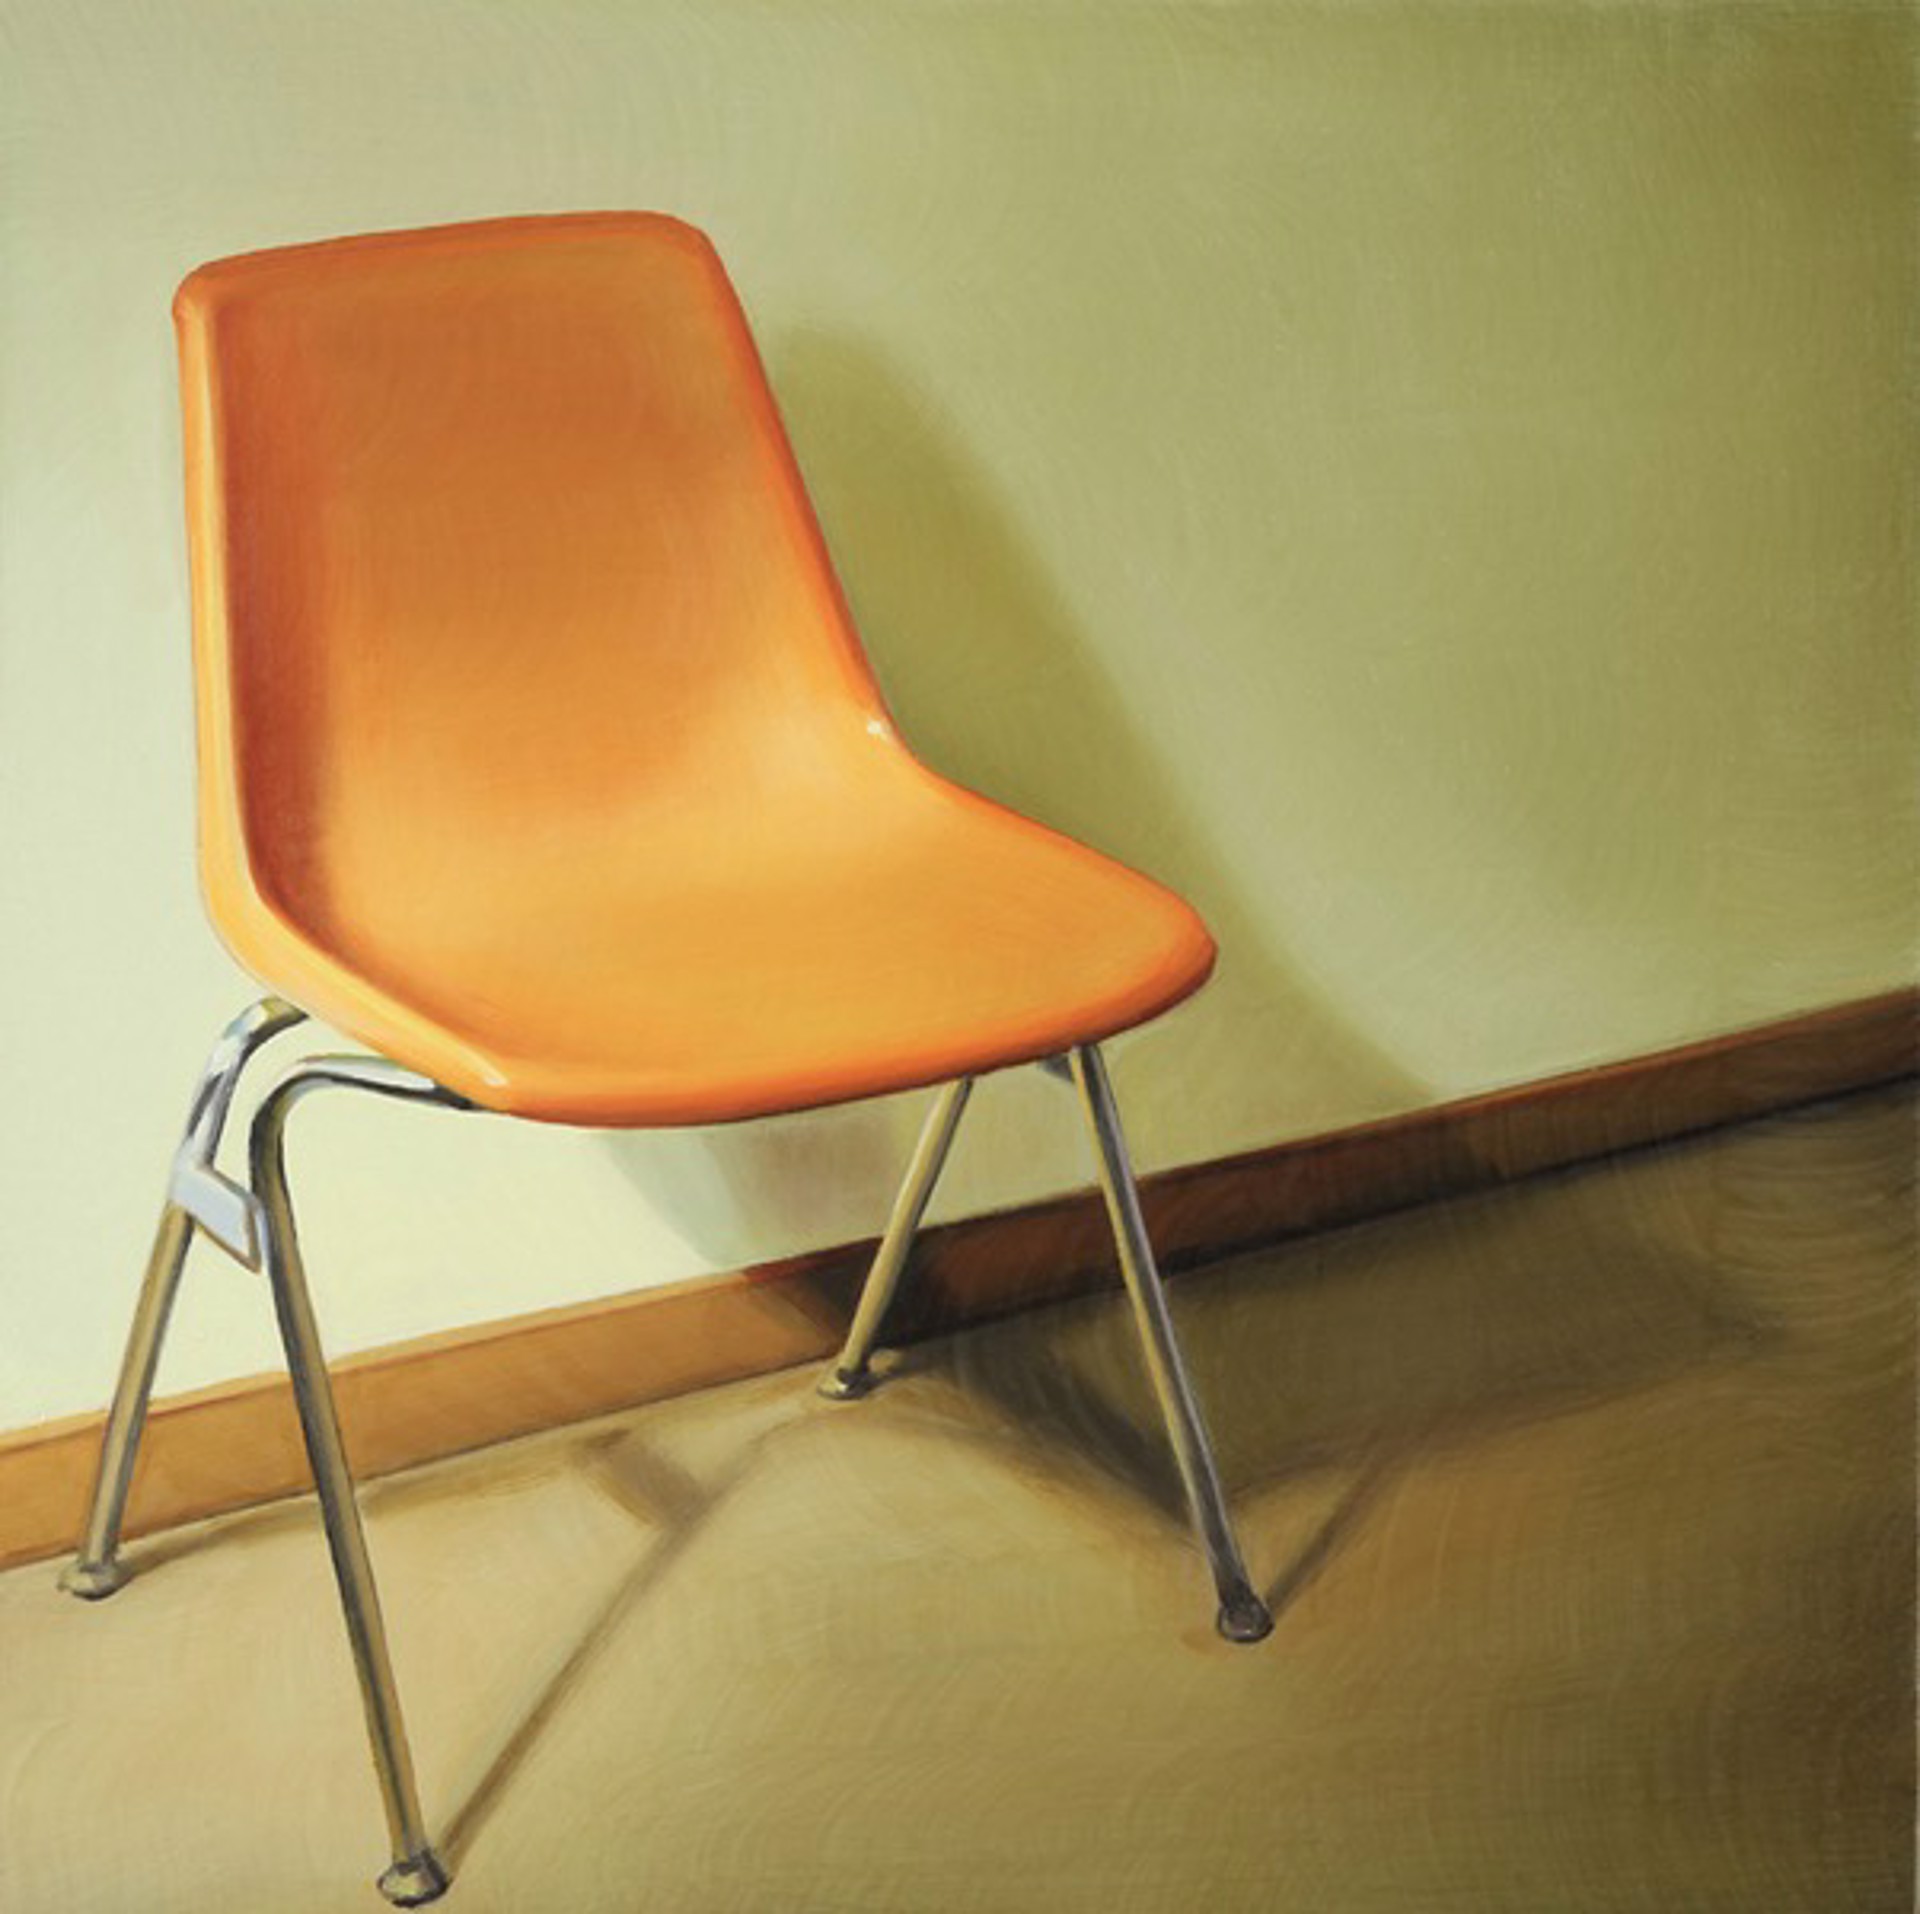 Japantown Chair #1 by Ada Sadler